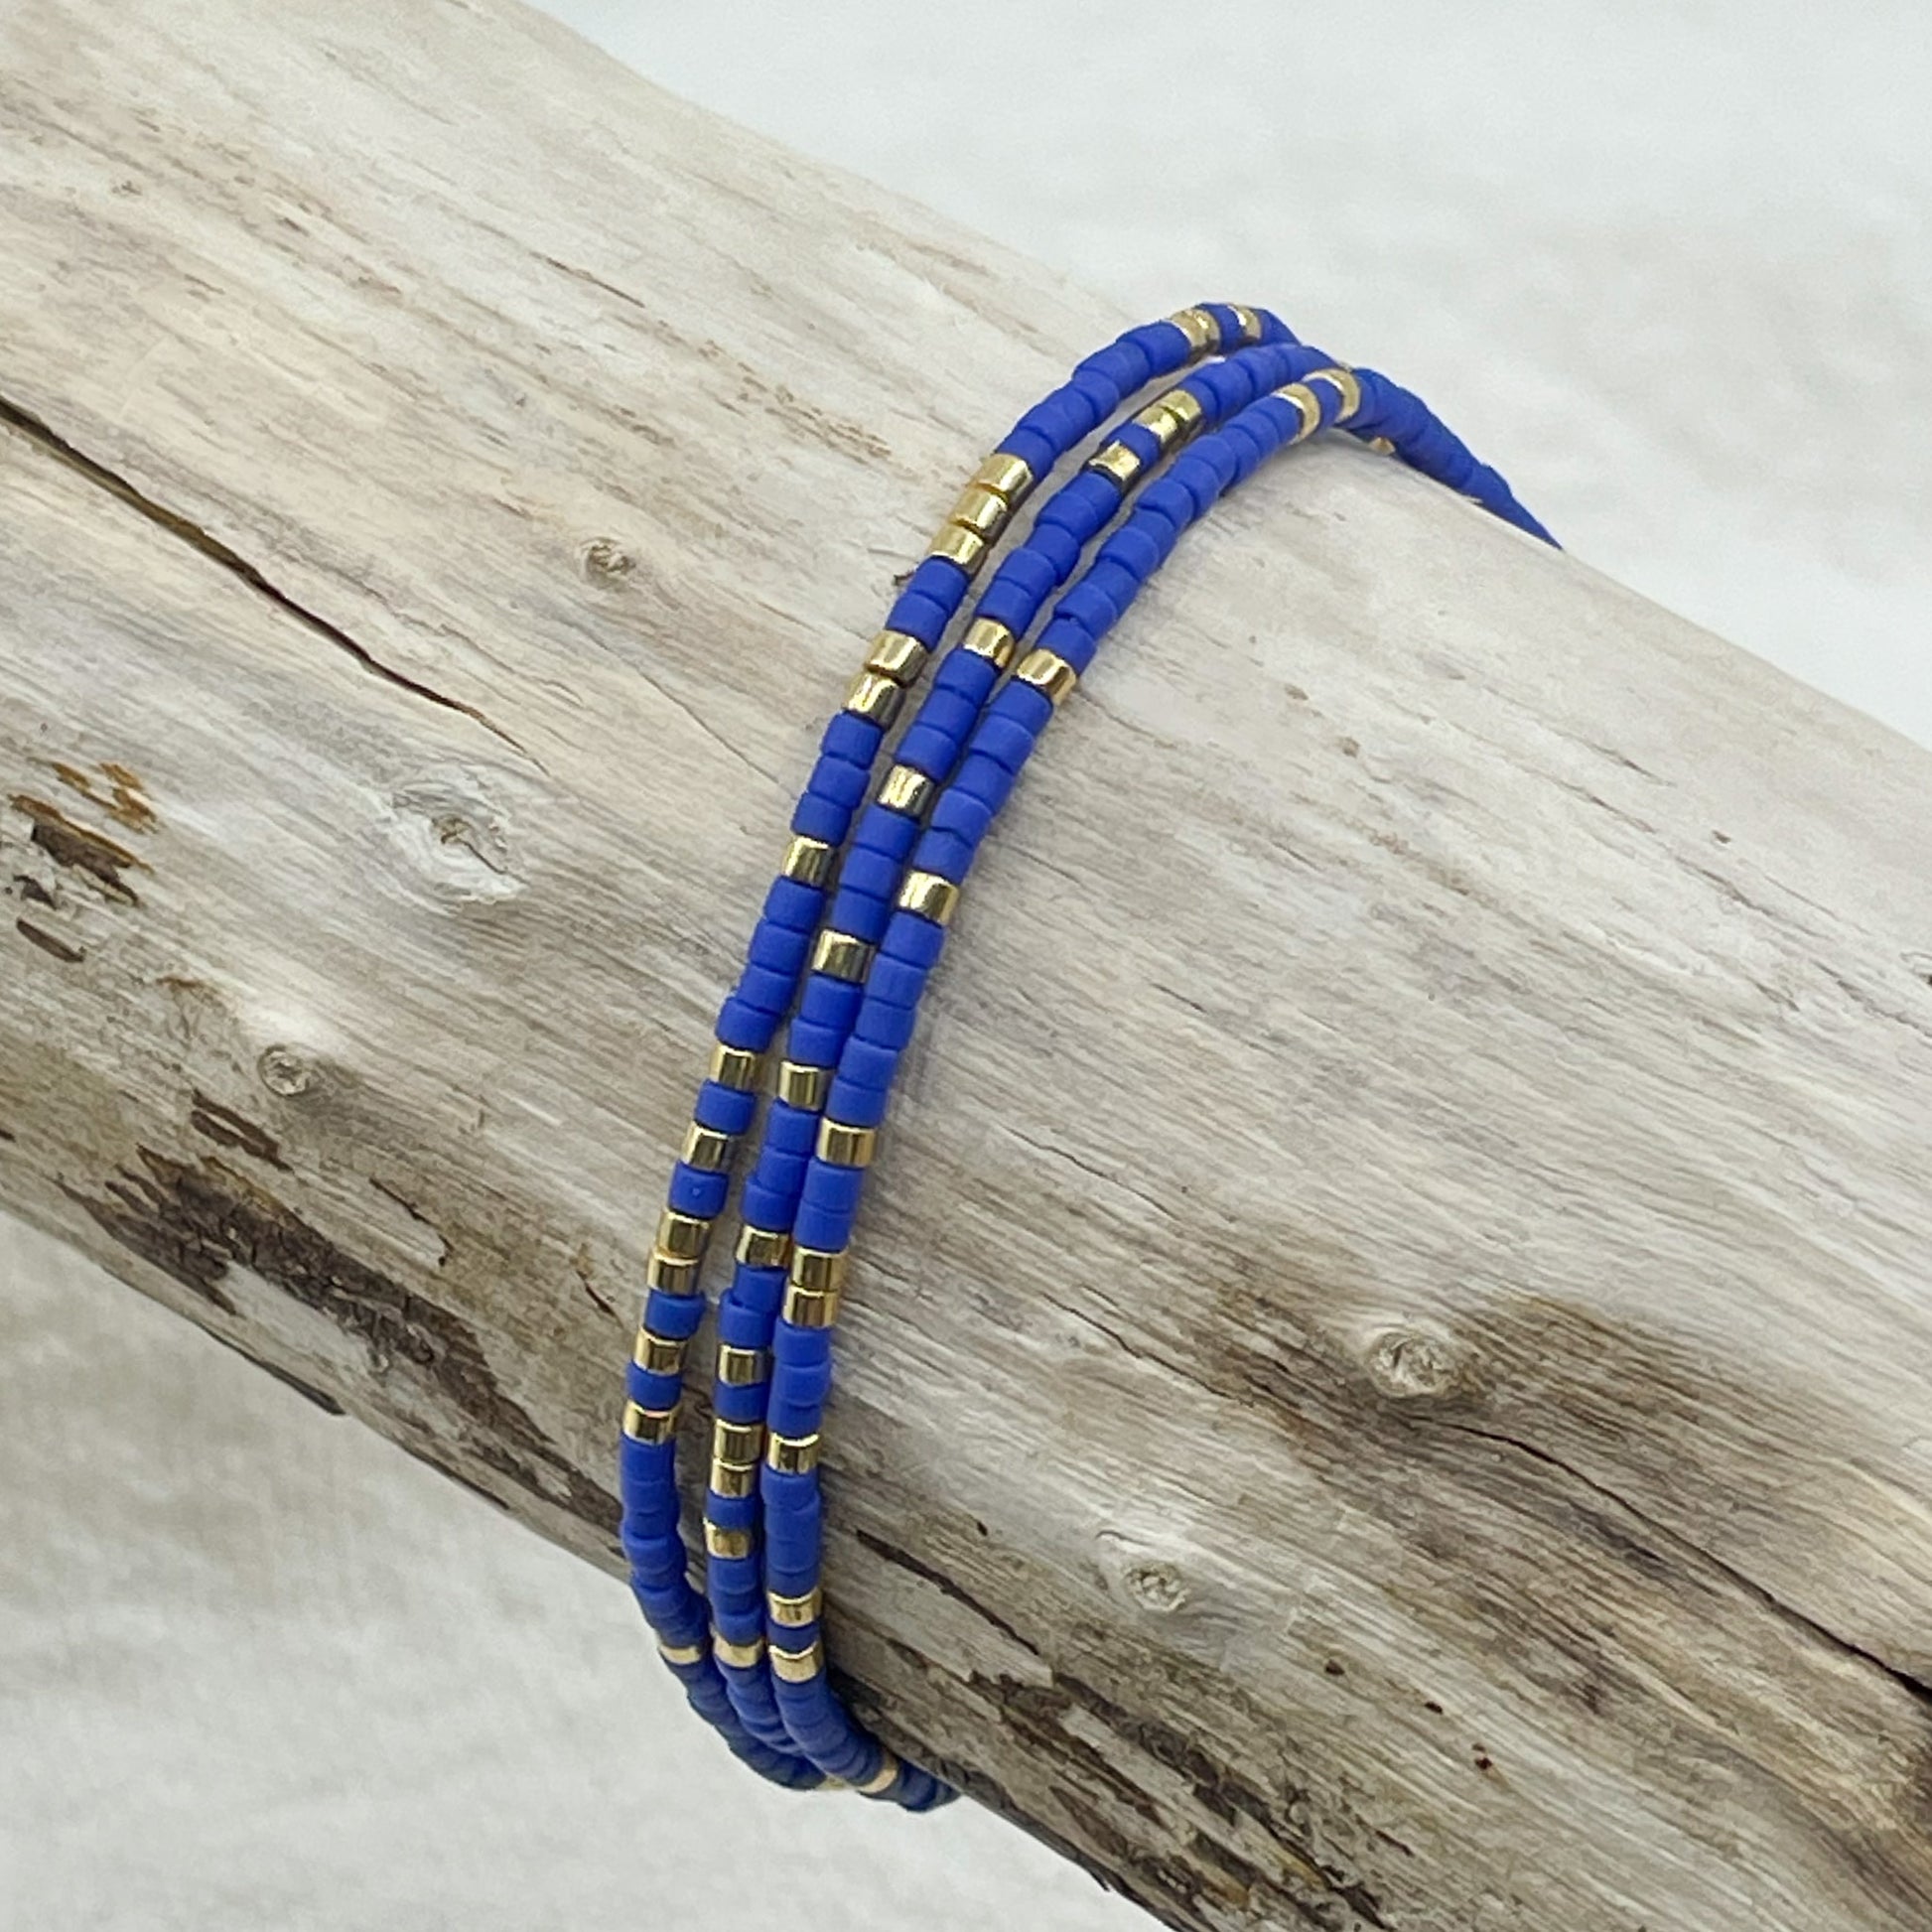 Bracelet ajustable en pierre de rocaille bleu des îles grecques et or. Trois tours de poignet